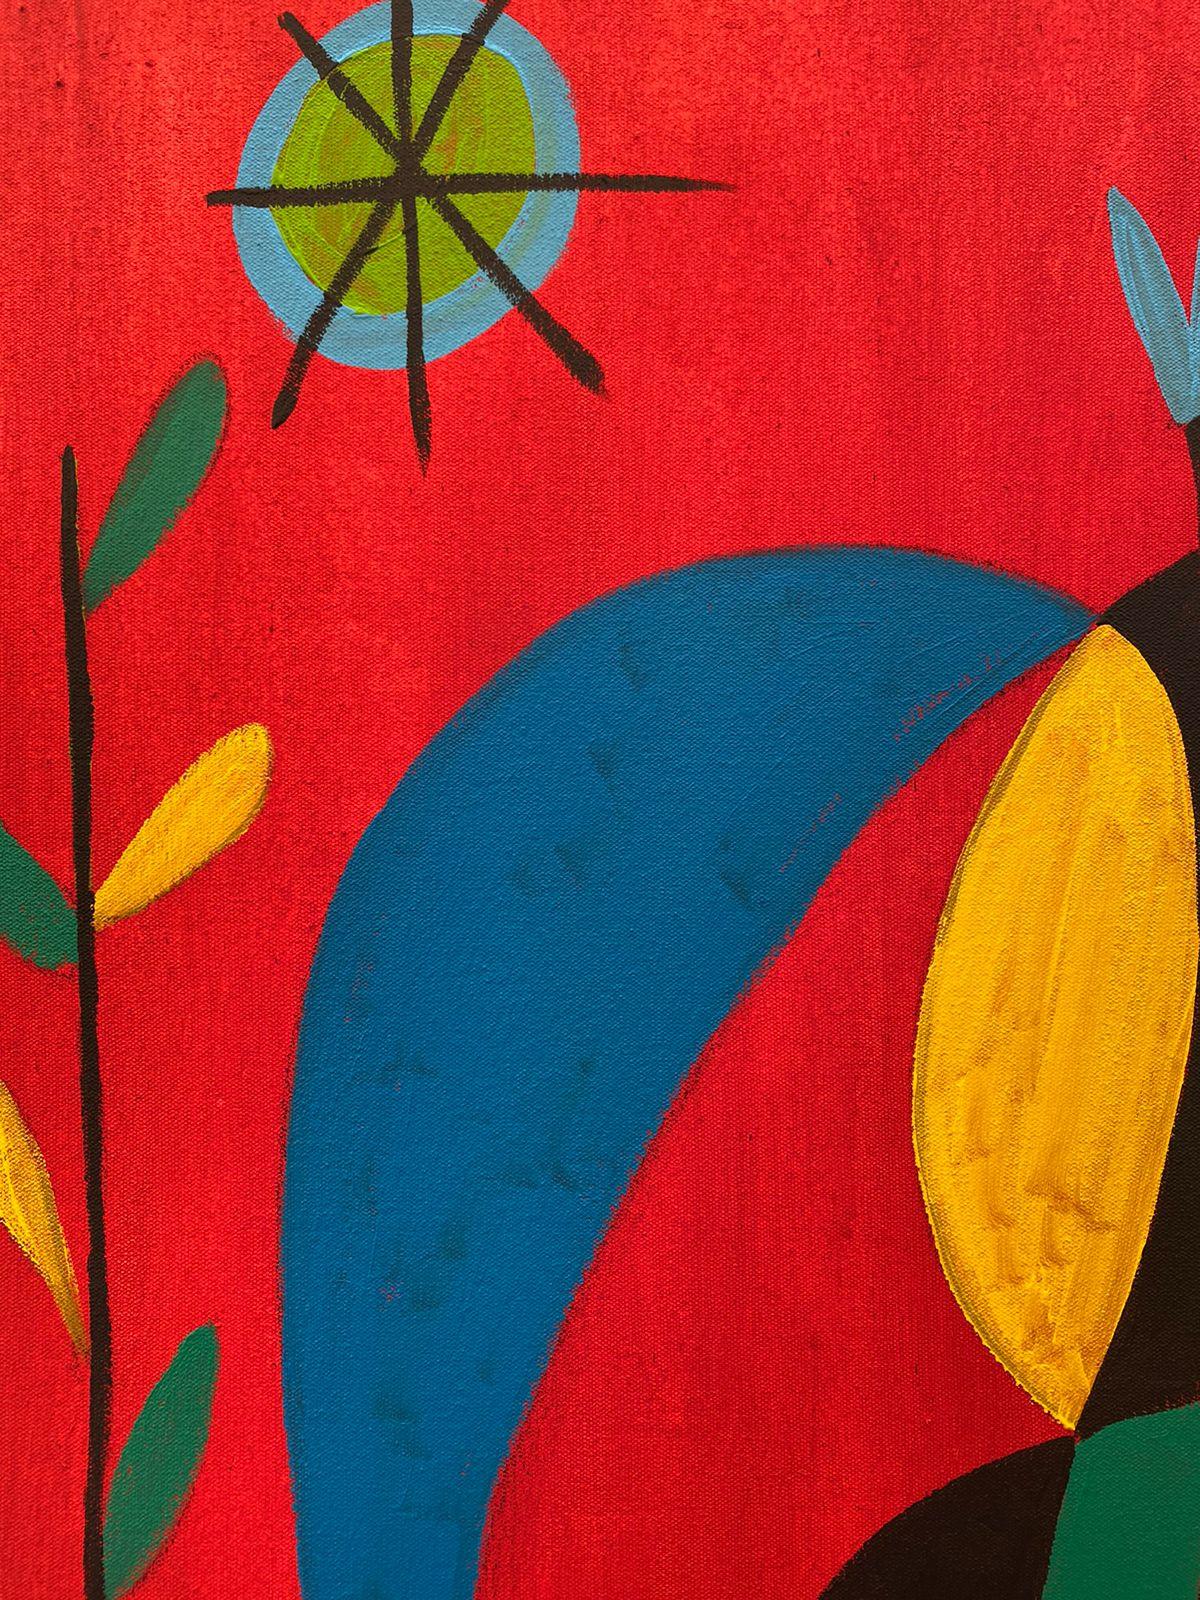 Art contemporain, peinture abstraite
Acrylique sur toile
130x170cm
Signé 





A propos de l'artiste
Enrique Pichardo (Mexico, 1973) est diplômé de l'Escuela Nacional de Pintura, Escultura y Grabado (ENPEG) 